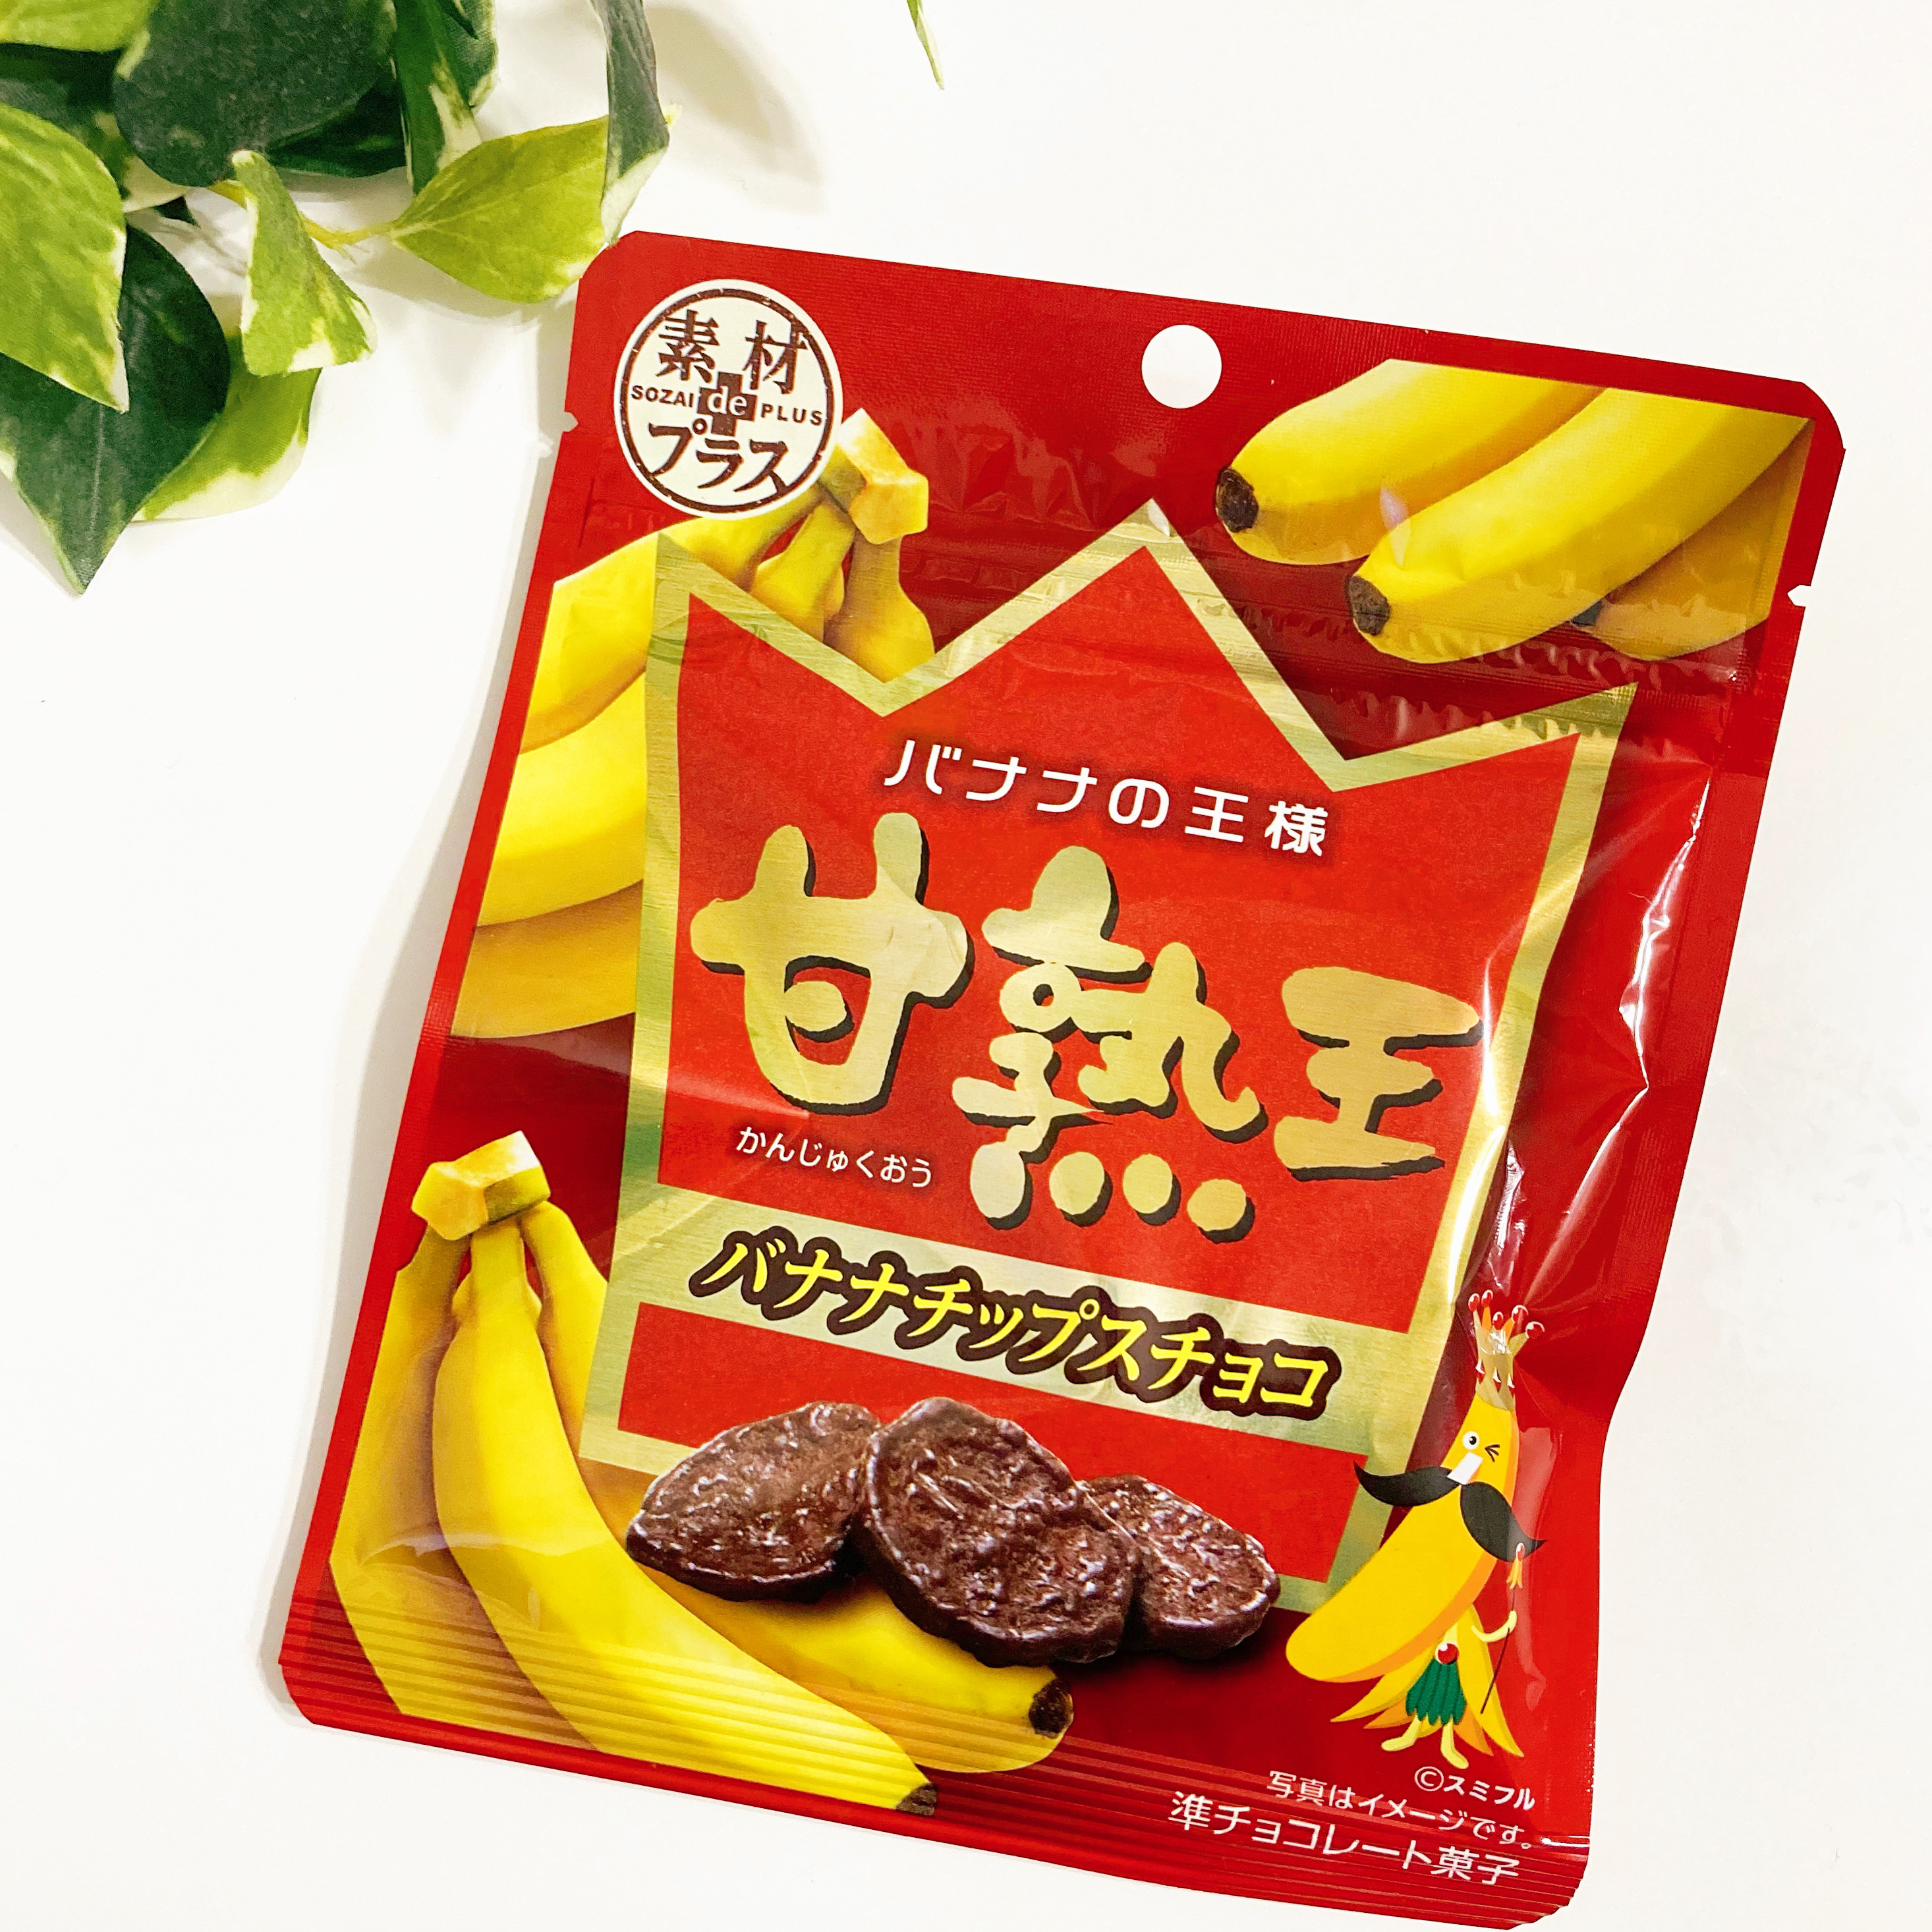 ダイソーのオススメのお菓子「素材deプラス 甘熟王バナナチップスチョコ 32g」